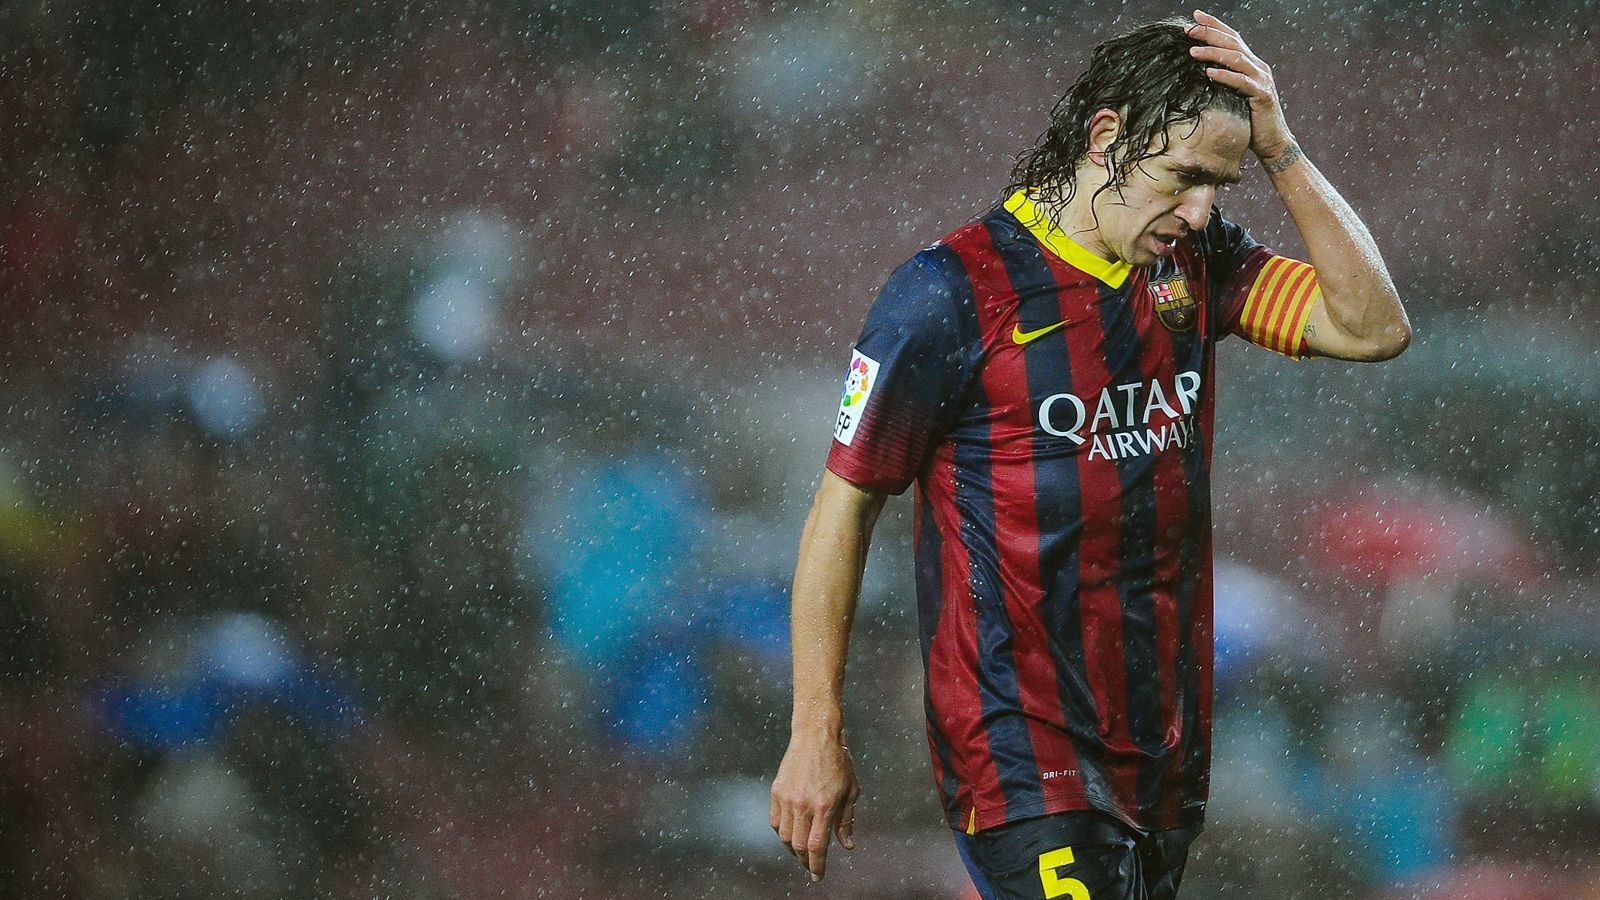 
                <strong>Platz 5 - Carles Puyol</strong><br>
                Pflichtspiele für Barca: 593 (zwischen 1999 und 2014) - Tore: 19 - Position: Innenverteidiger
              